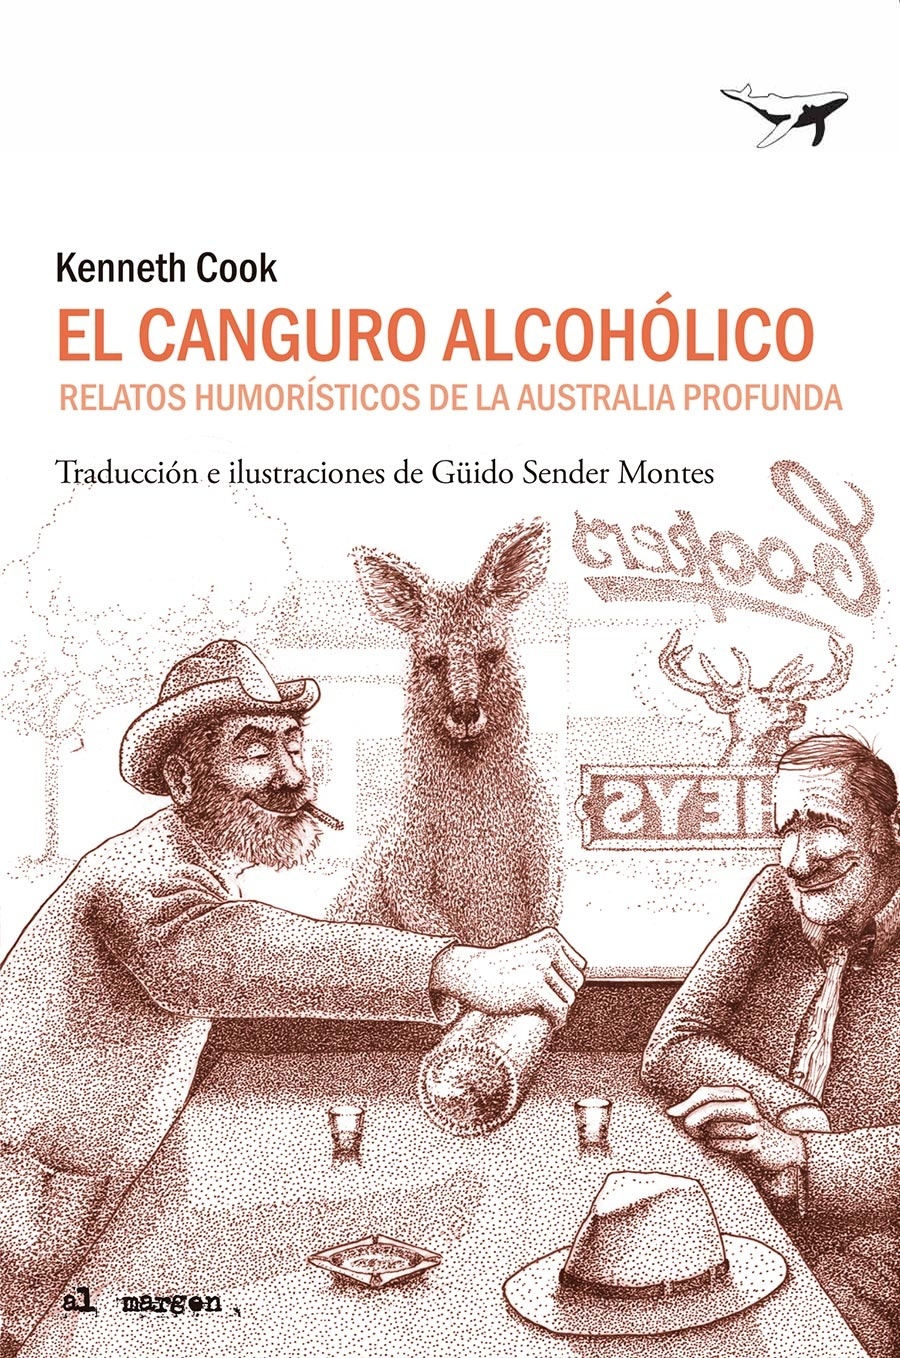 Canguro alcohólico, El "Relatos humorísticos de la Australia profunda". 